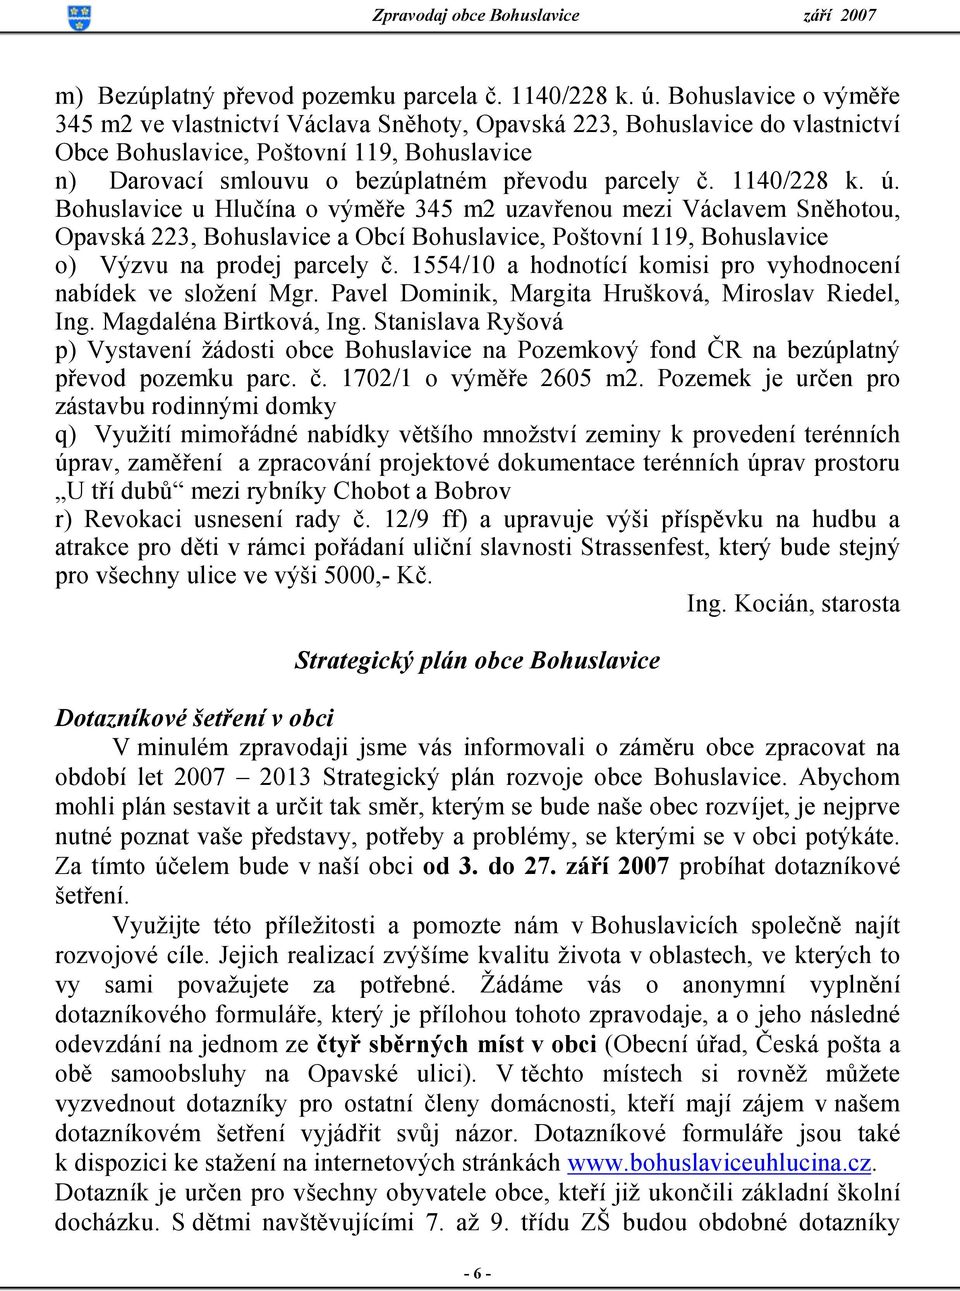 1140/228 k. ú. Bohuslavice u Hlučína o výměře 345 m2 uzavřenou mezi Václavem Sněhotou, Opavská 223, Bohuslavice a Obcí Bohuslavice, Poštovní 119, Bohuslavice o) Výzvu na prodej parcely č.